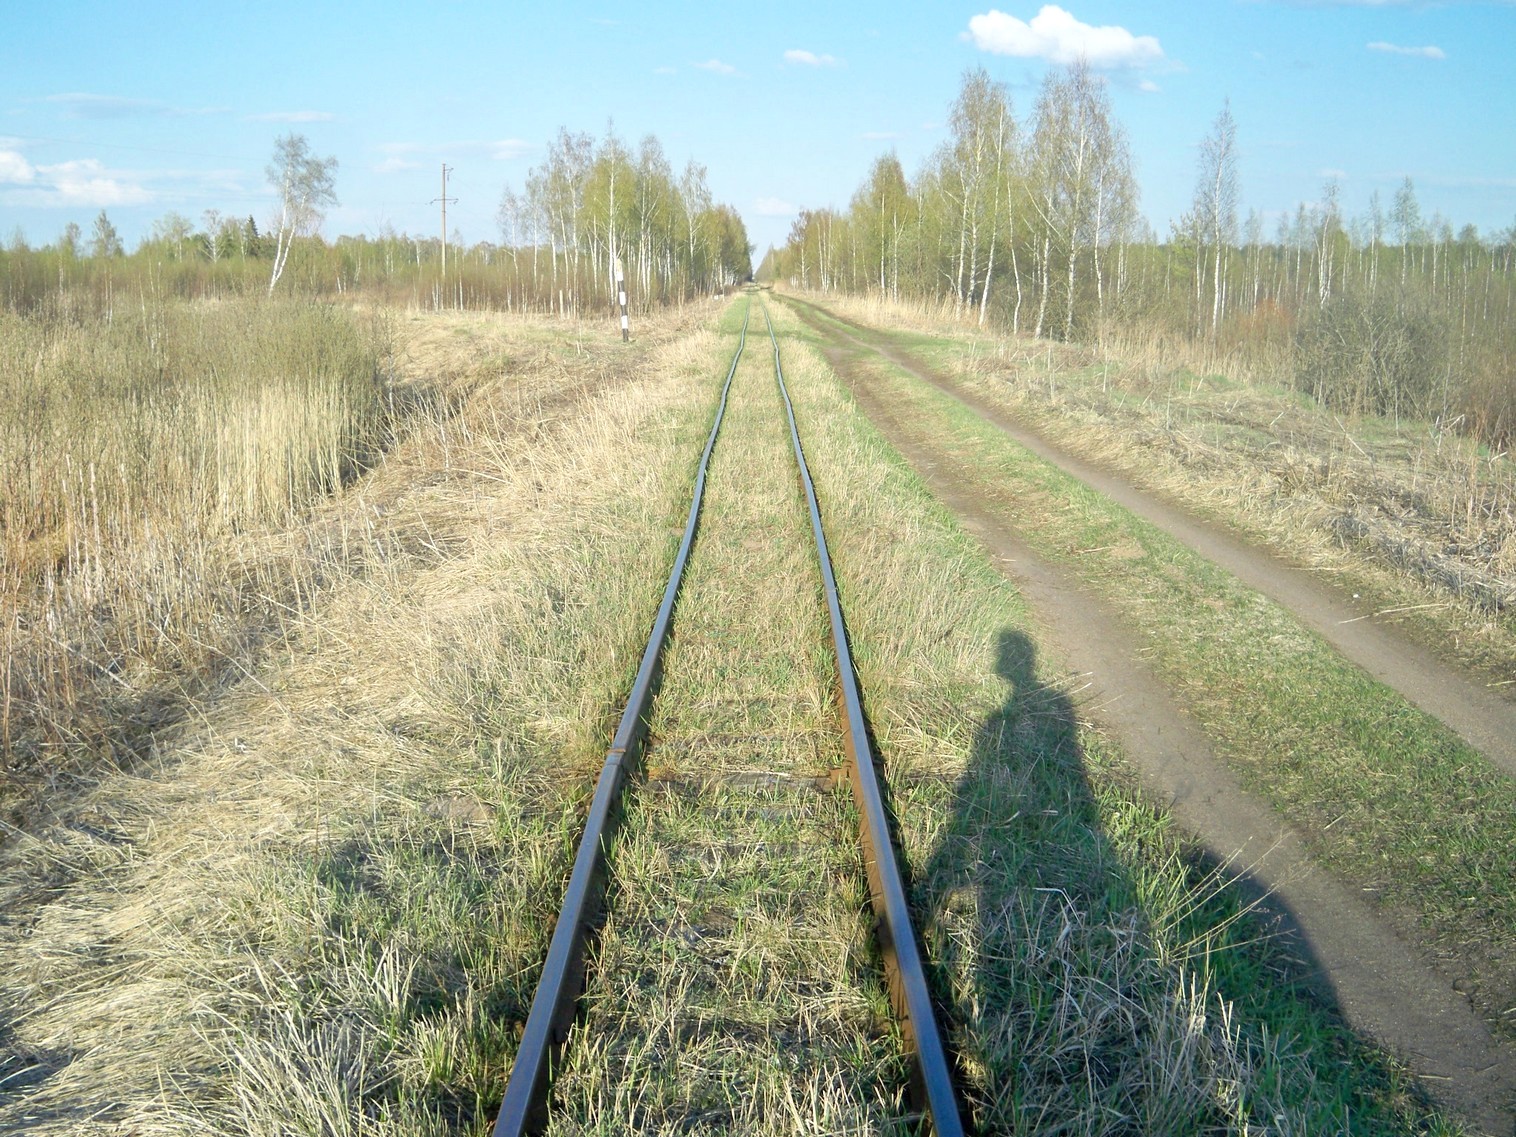 Узкоколейная железная дорога Васильевского предприятия промышленного железнодорожного транспорта  — фотографии, сделанные в 2014 году (часть 10)